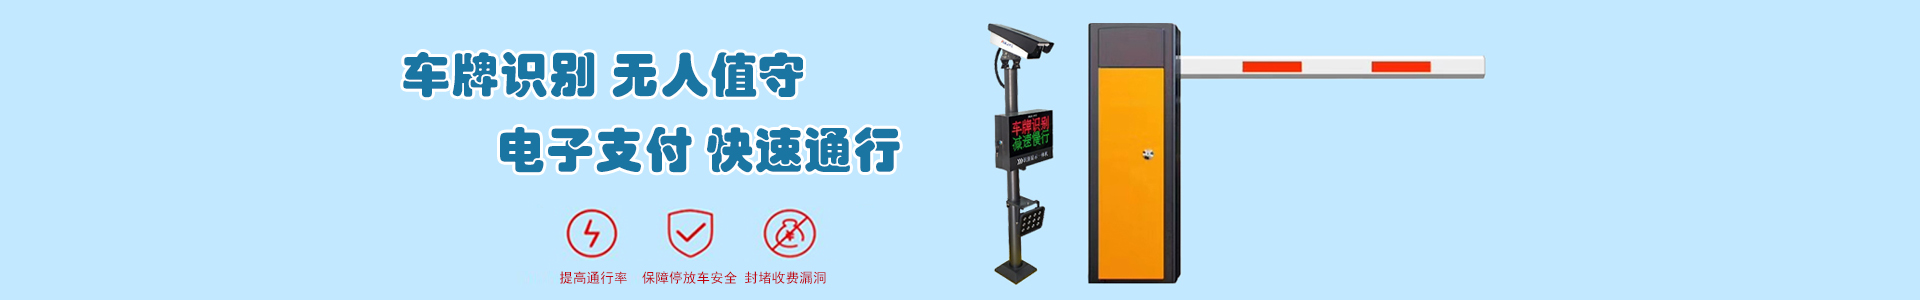 监控9-监控系统-上海帆蓝智能科技有限公司-车辆车牌识别|监控摄像头|道闸|小区门禁|人脸识别|伸缩门|